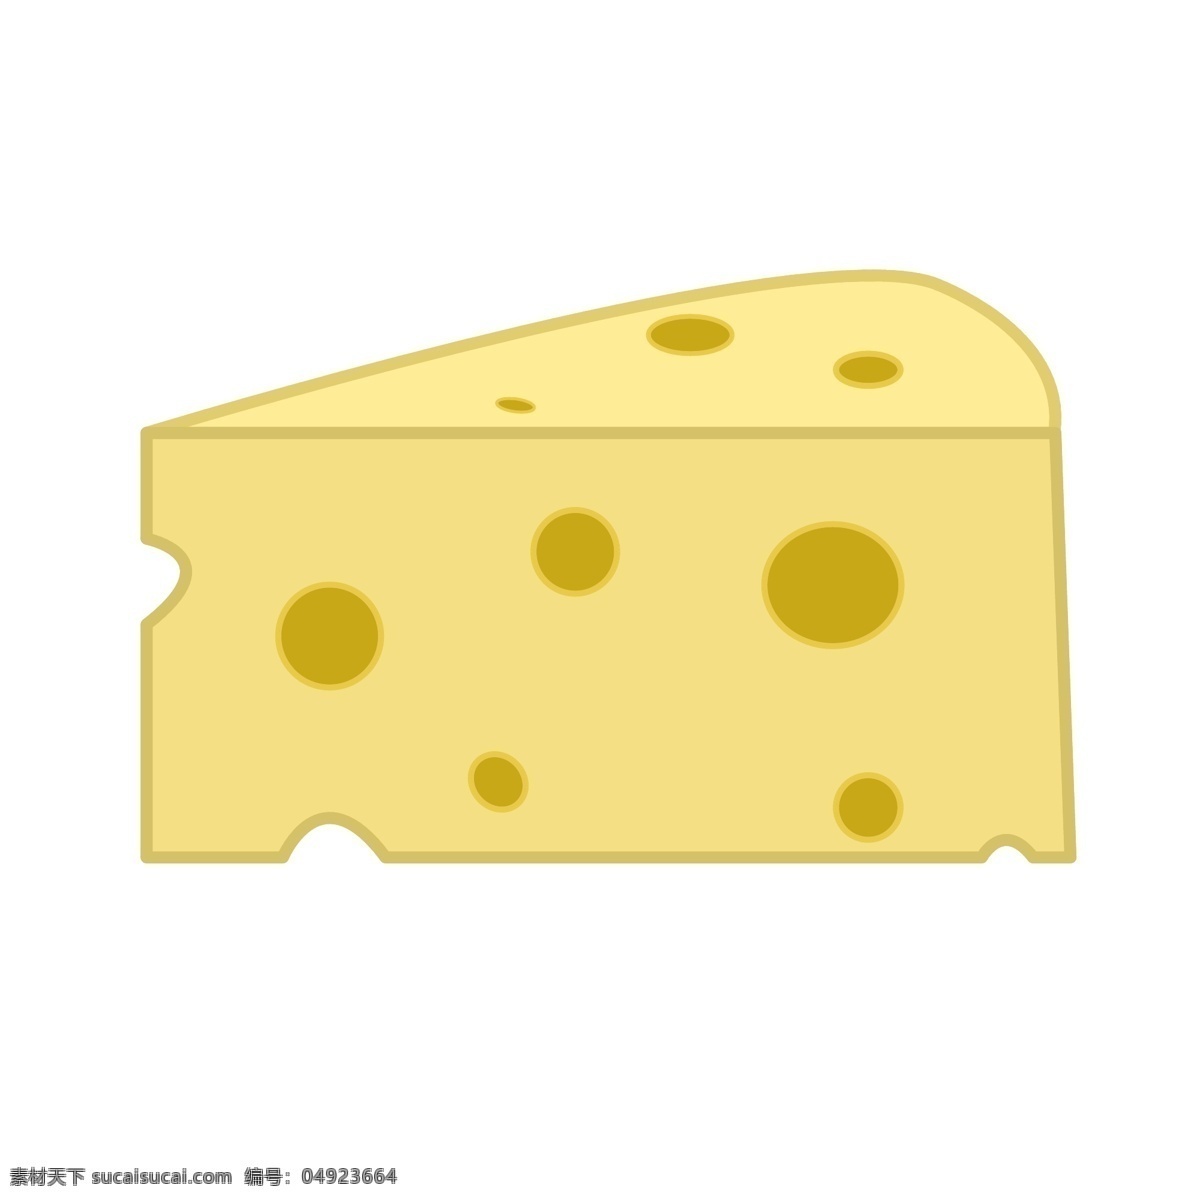 美味 食物 奶酪 插画 黄色的奶酪 美味的奶酪 卡通插画 食物插画 食品插画 美食插画 美味食物